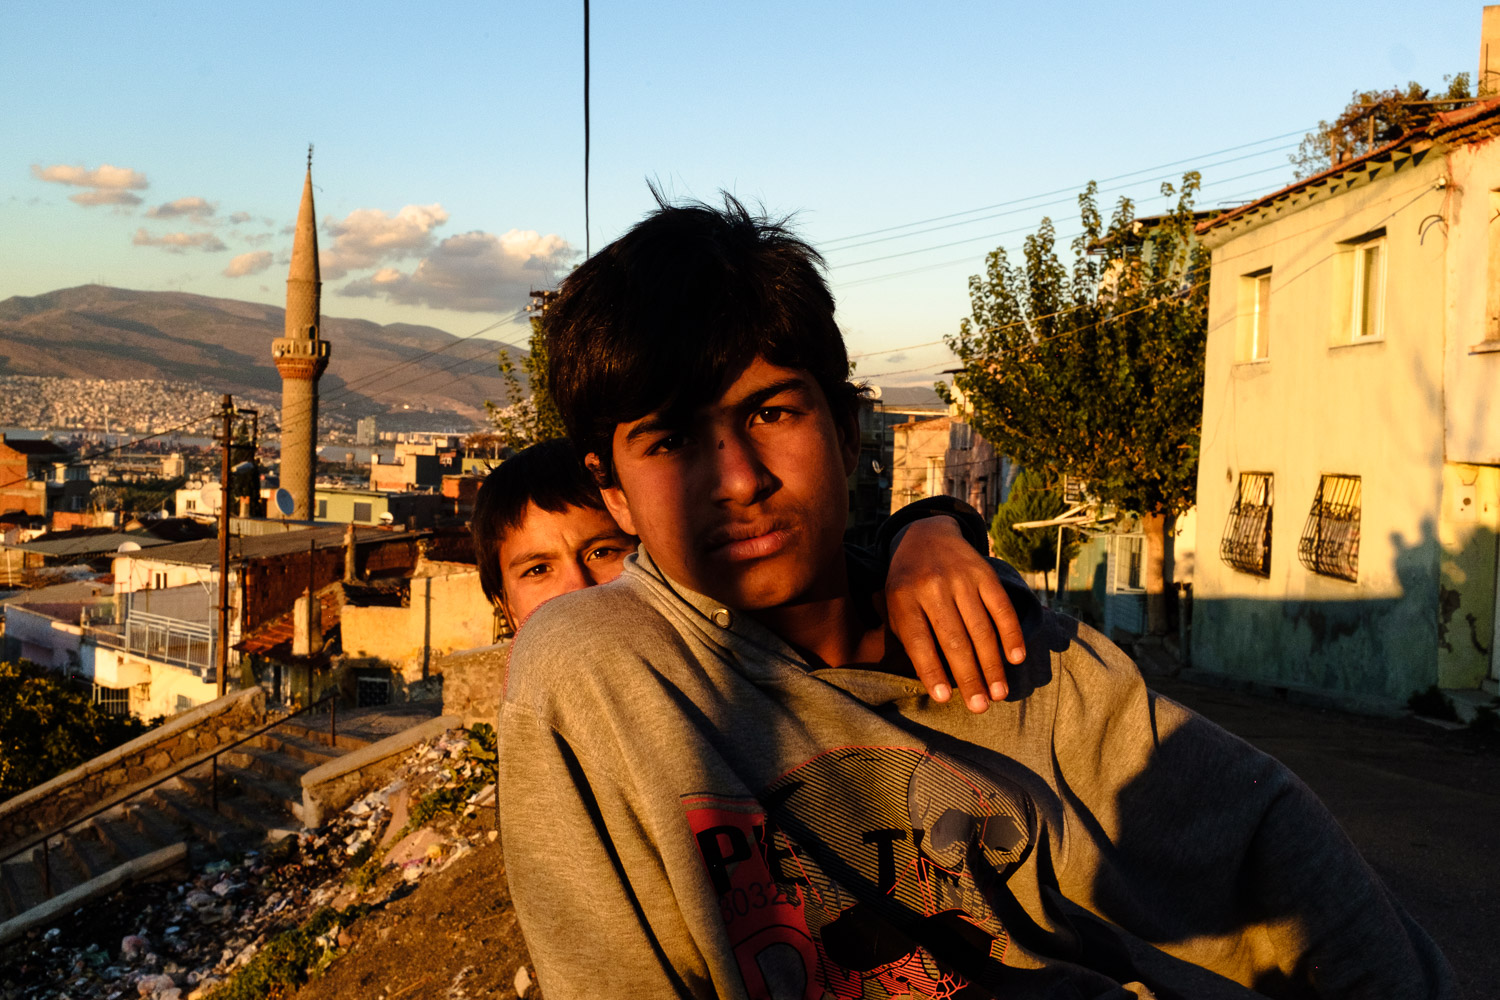 Syrian Child Refugees in Turkey